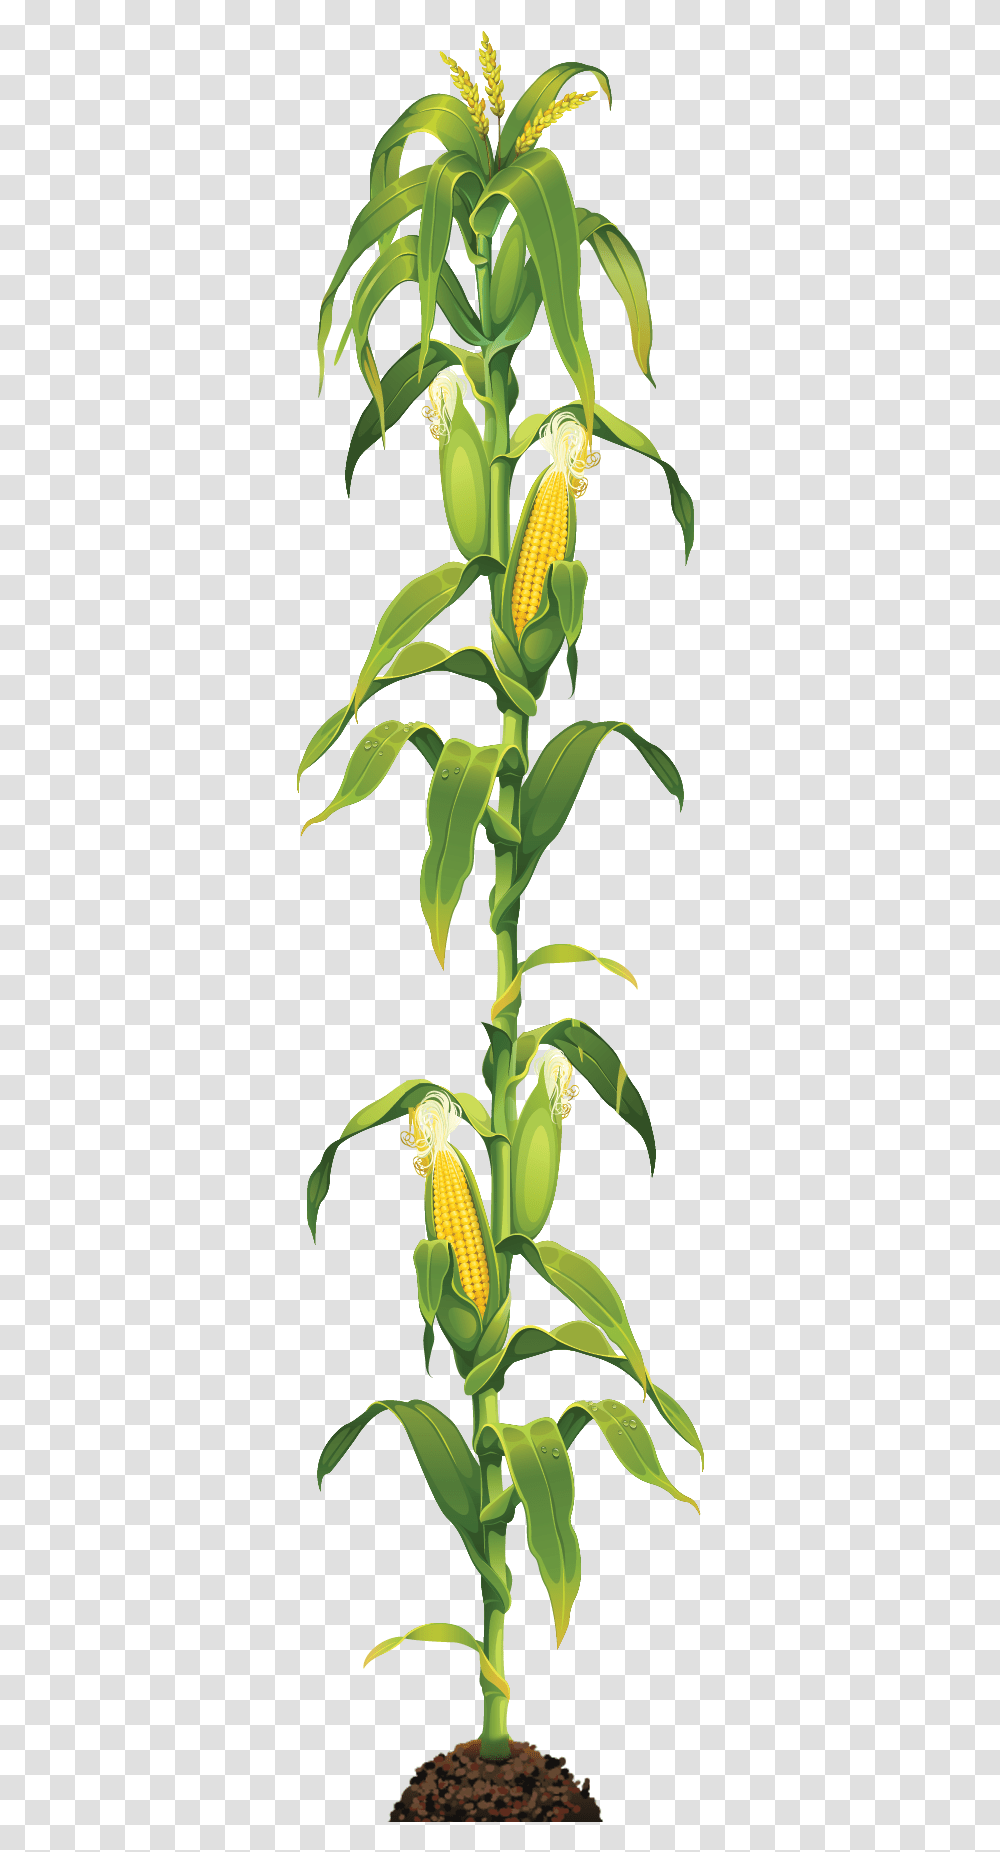 Corn Stalk, Plant, Pineapple, Food, Vegetable Transparent Png